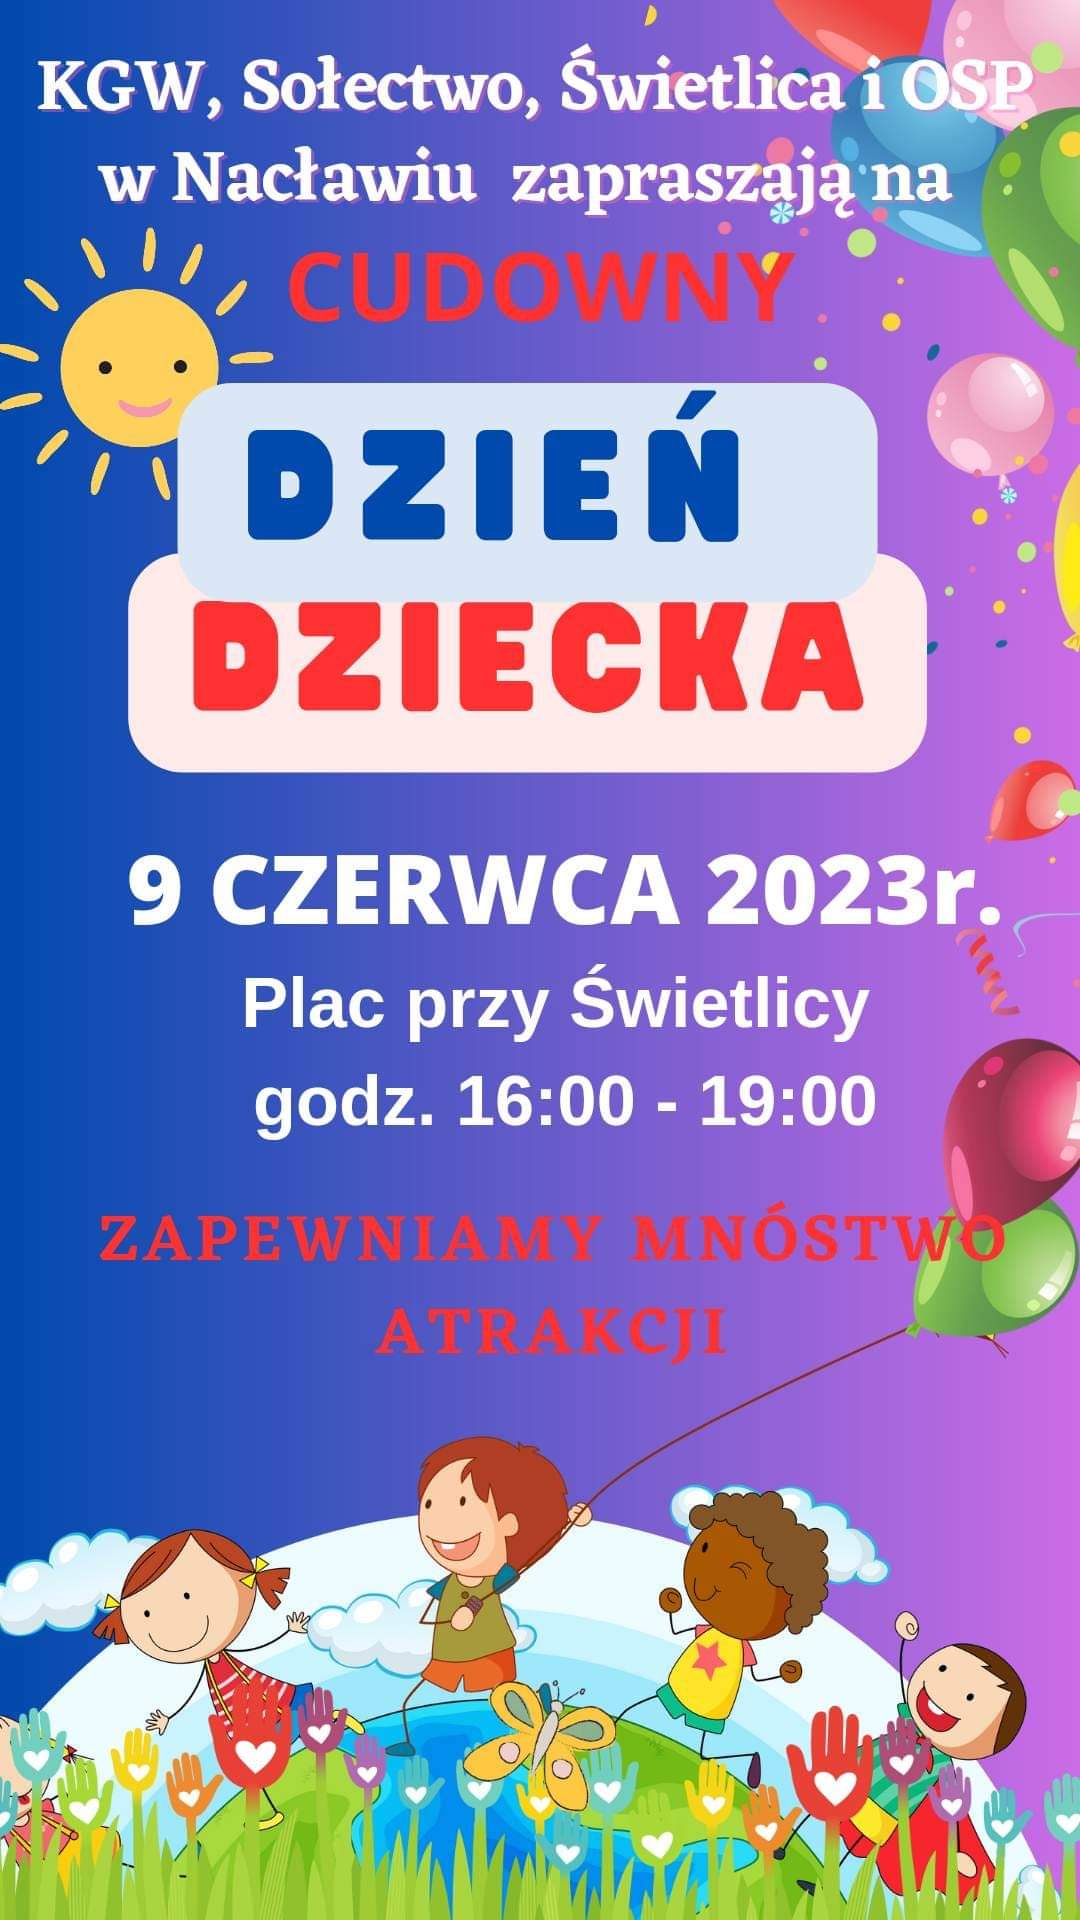 Plakat z zaproszeniem na Dzień Dziecka w Nacławiu, gm. Polanów 9 czerwca 2023 przy świetlicy od godziny 16